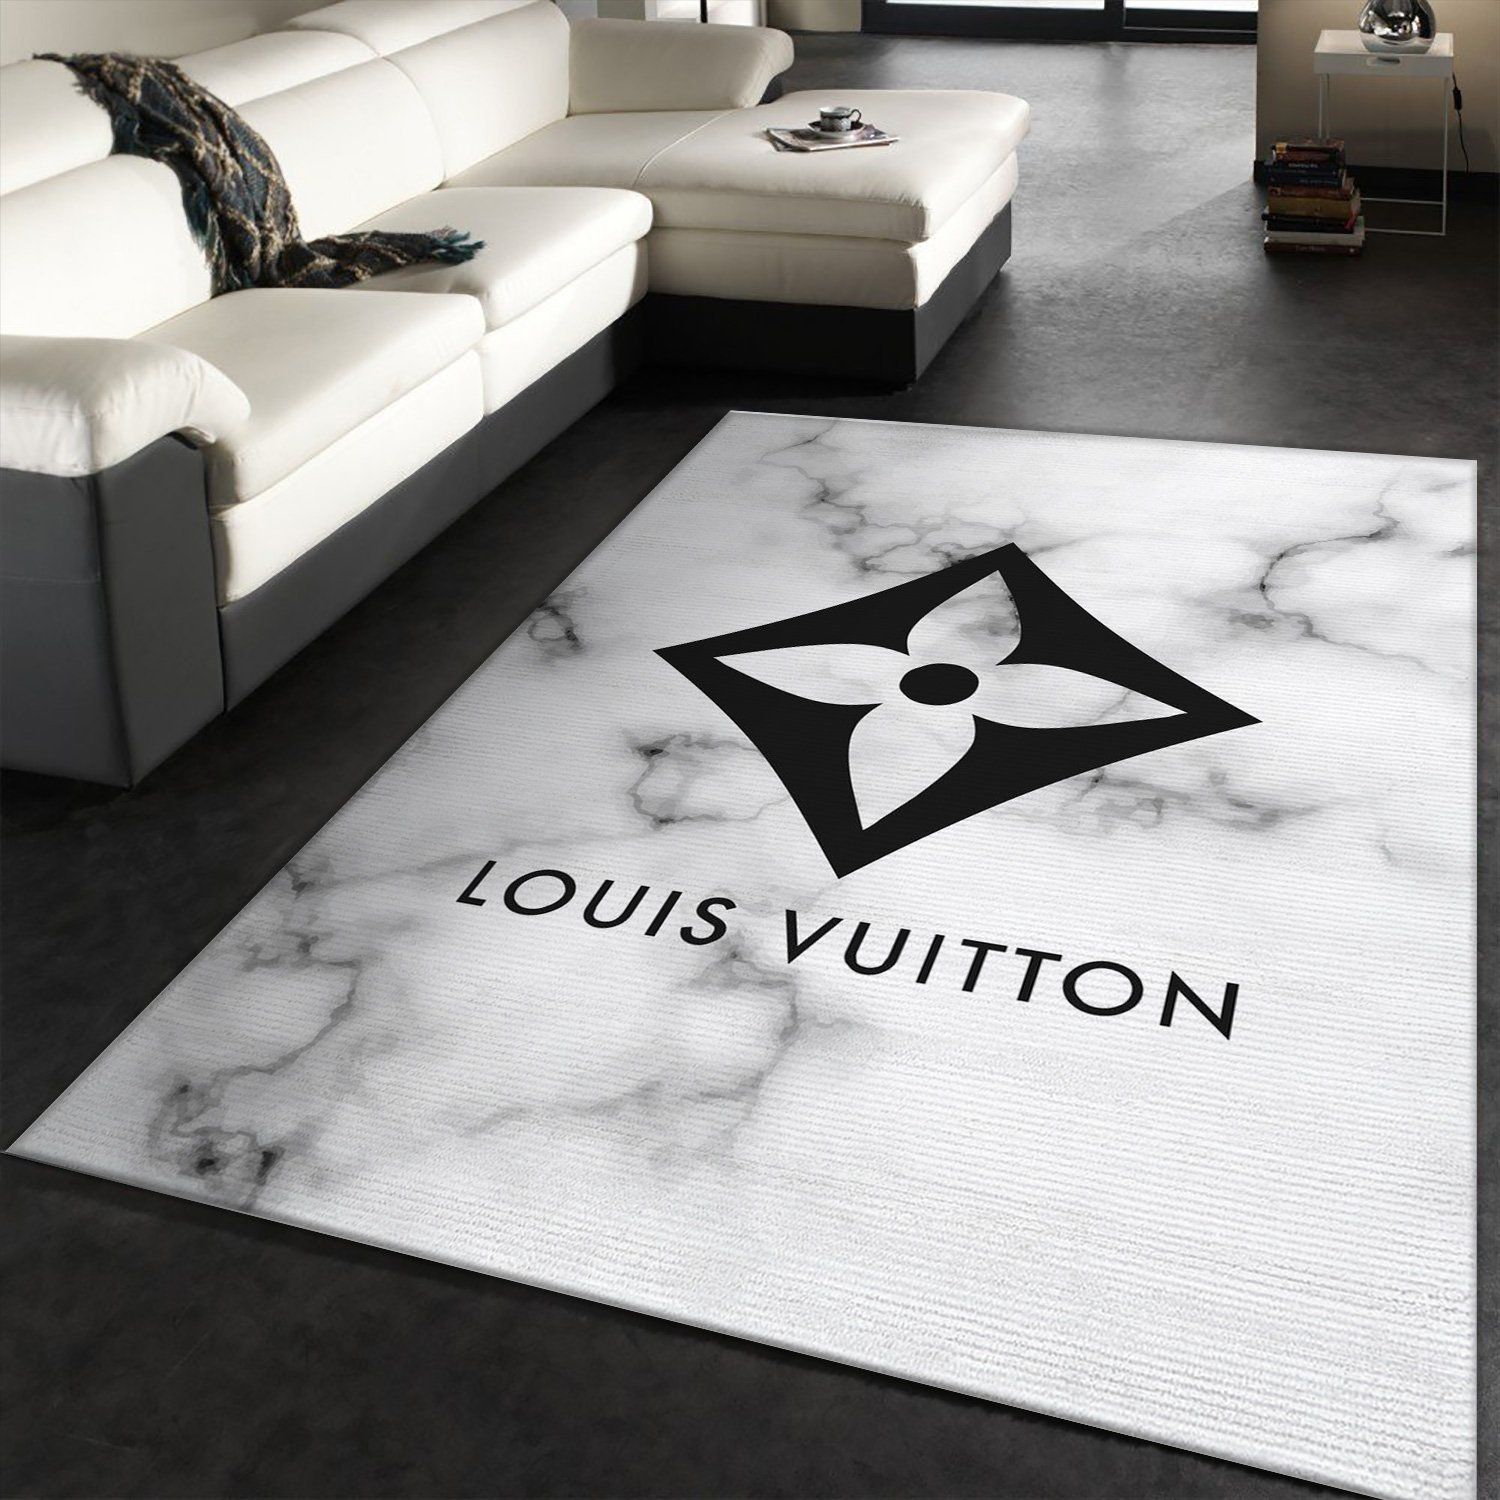 Louis Vuitton Rectangle Rug Living Room Rug Floor Decor Home Decor